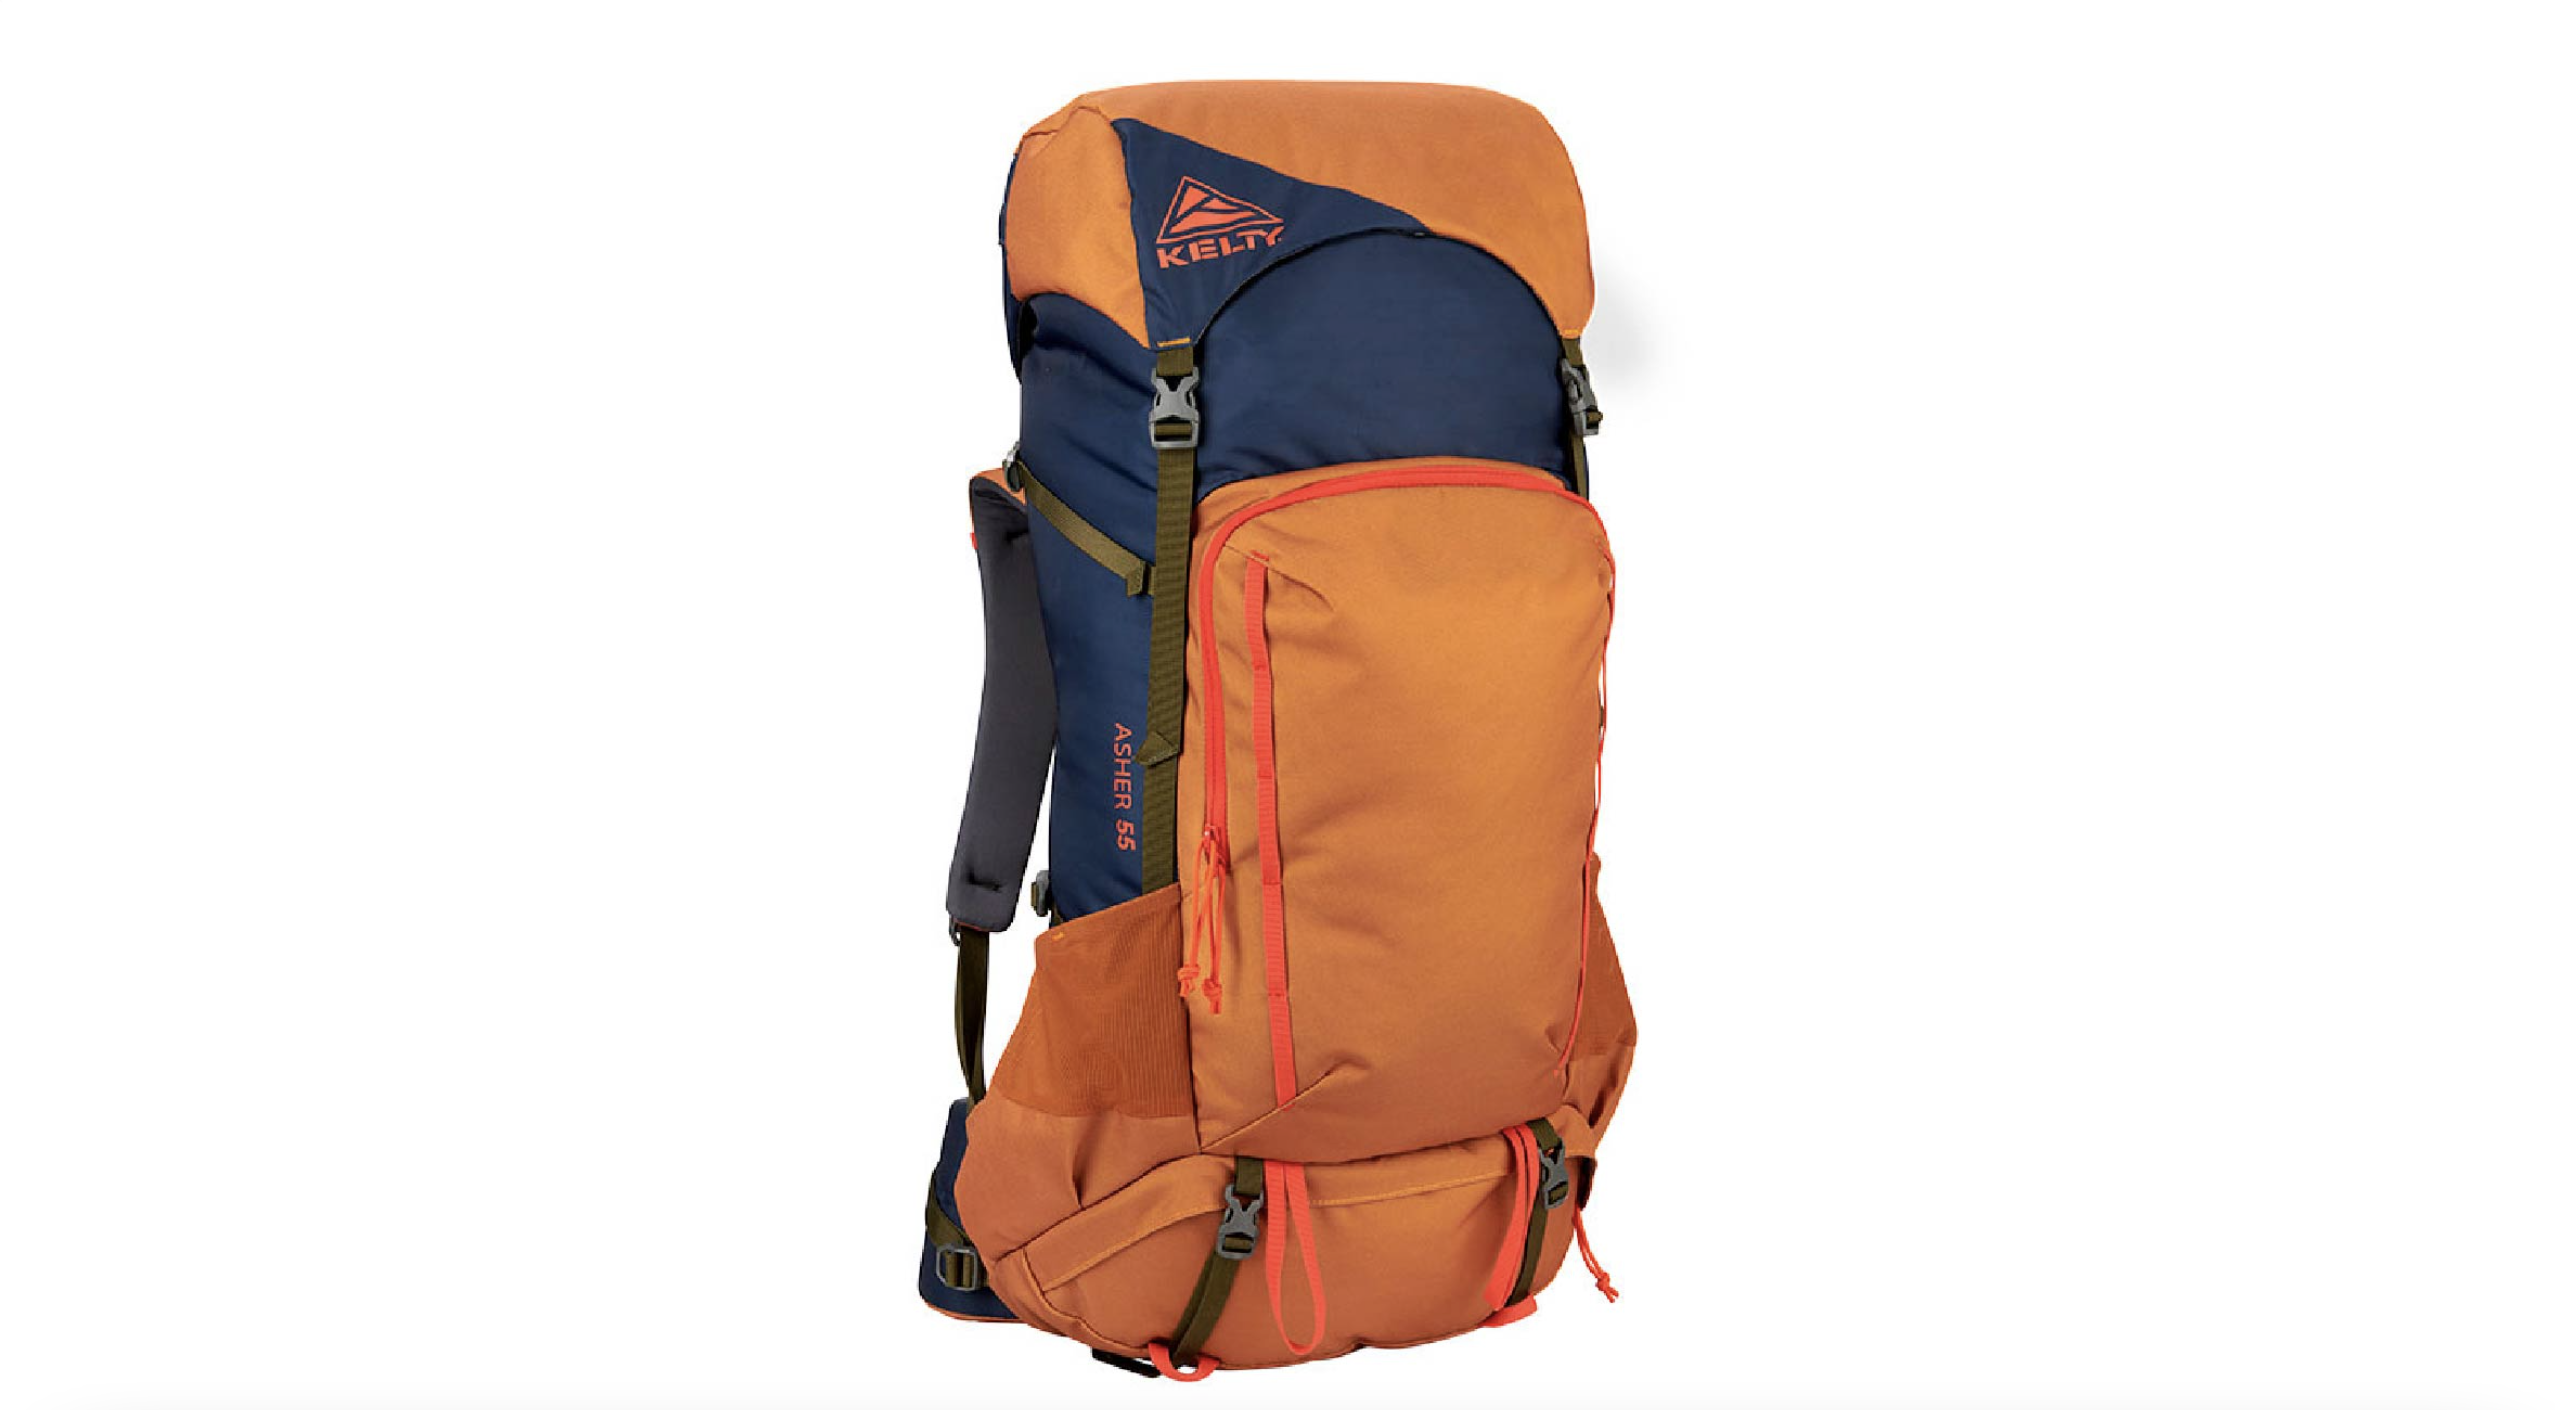 Matsun 90 L Hiking Bag - Buy Matsun 90 L Hiking Bag Online at Low Price -  Snapdeal